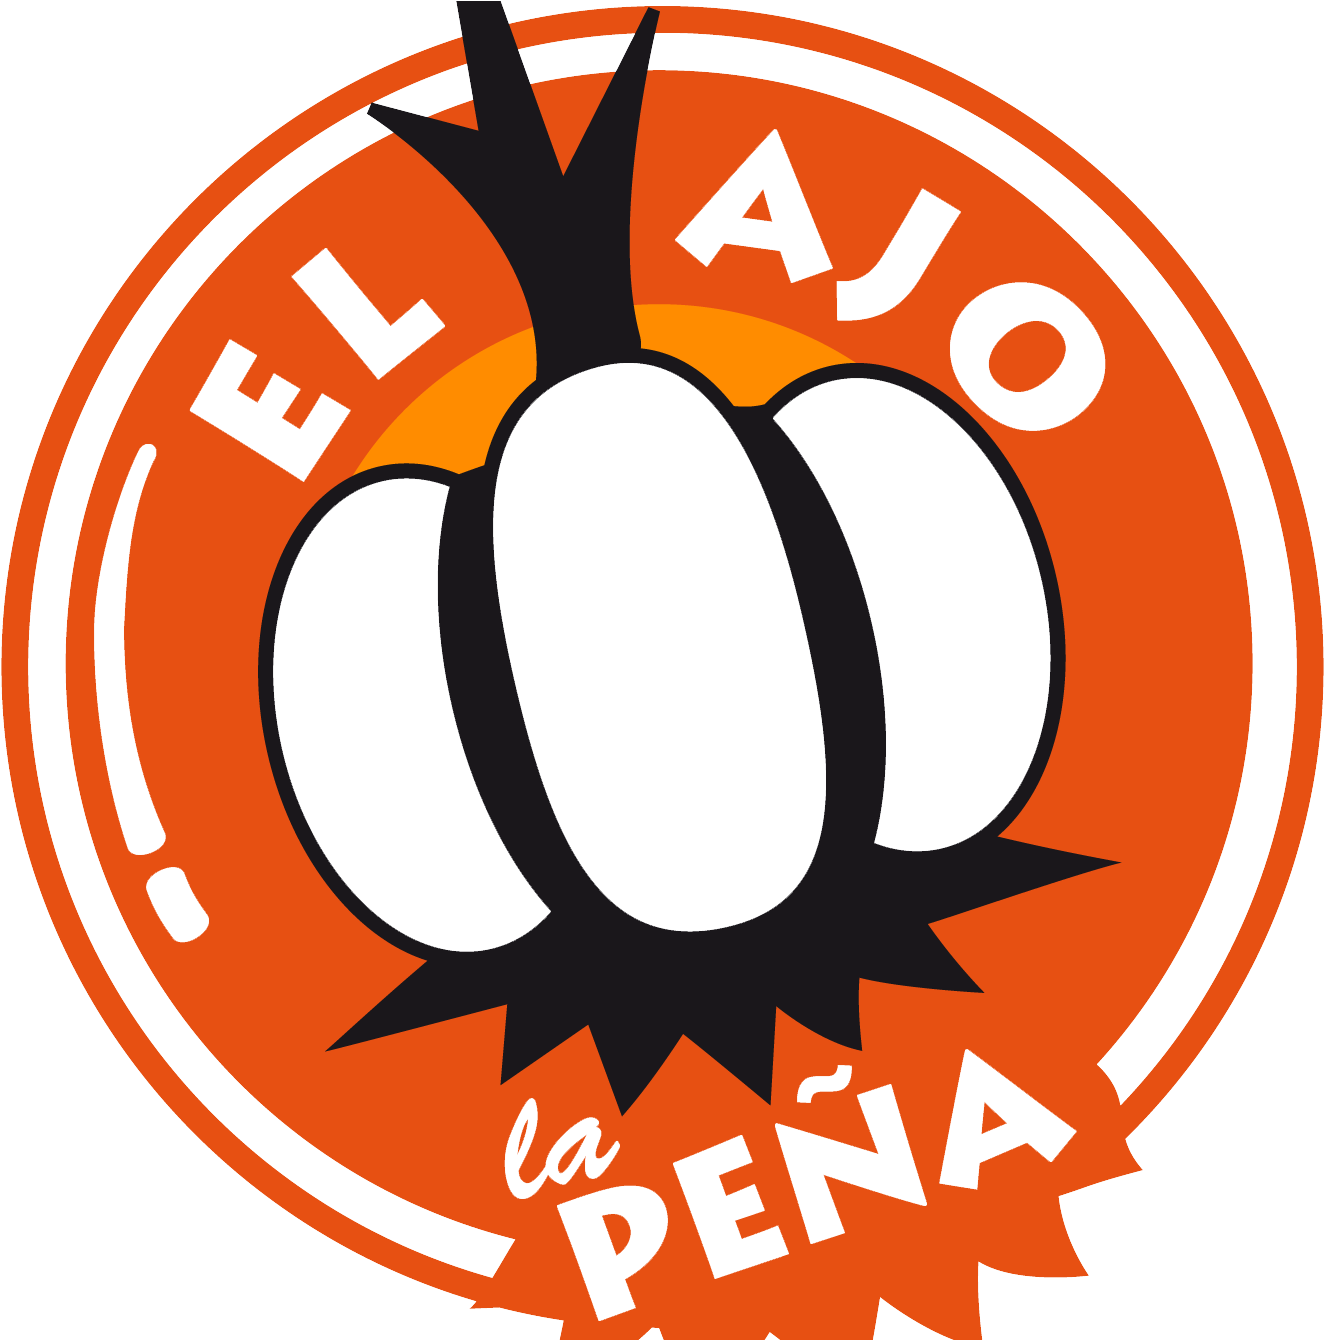 El Ajo, La Peña - Maks Clipart (1339x1339), Png Download